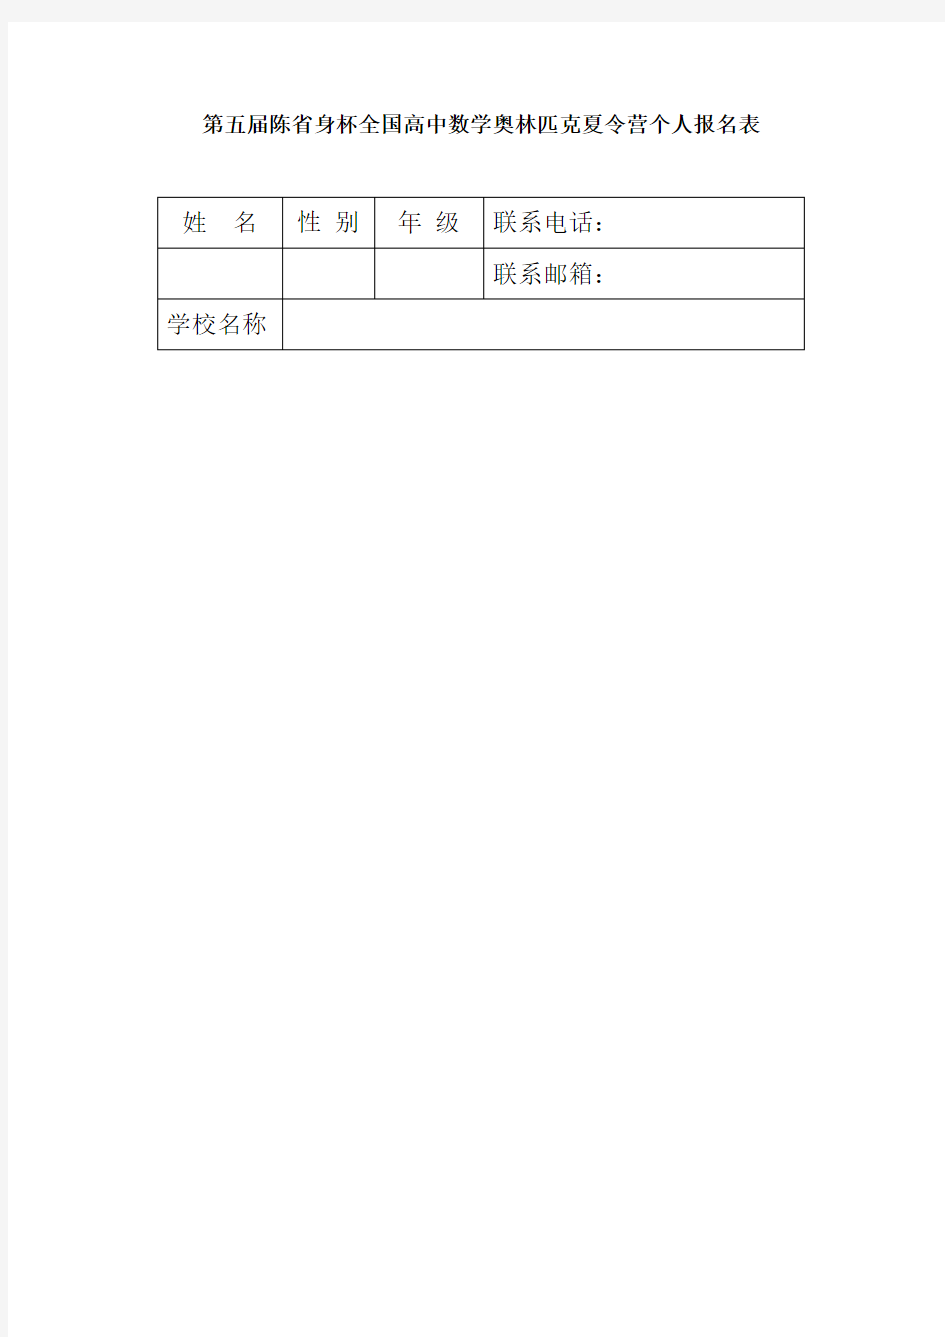 第五届陈省身杯全国高中数学奥林匹克夏令营学生报名简表